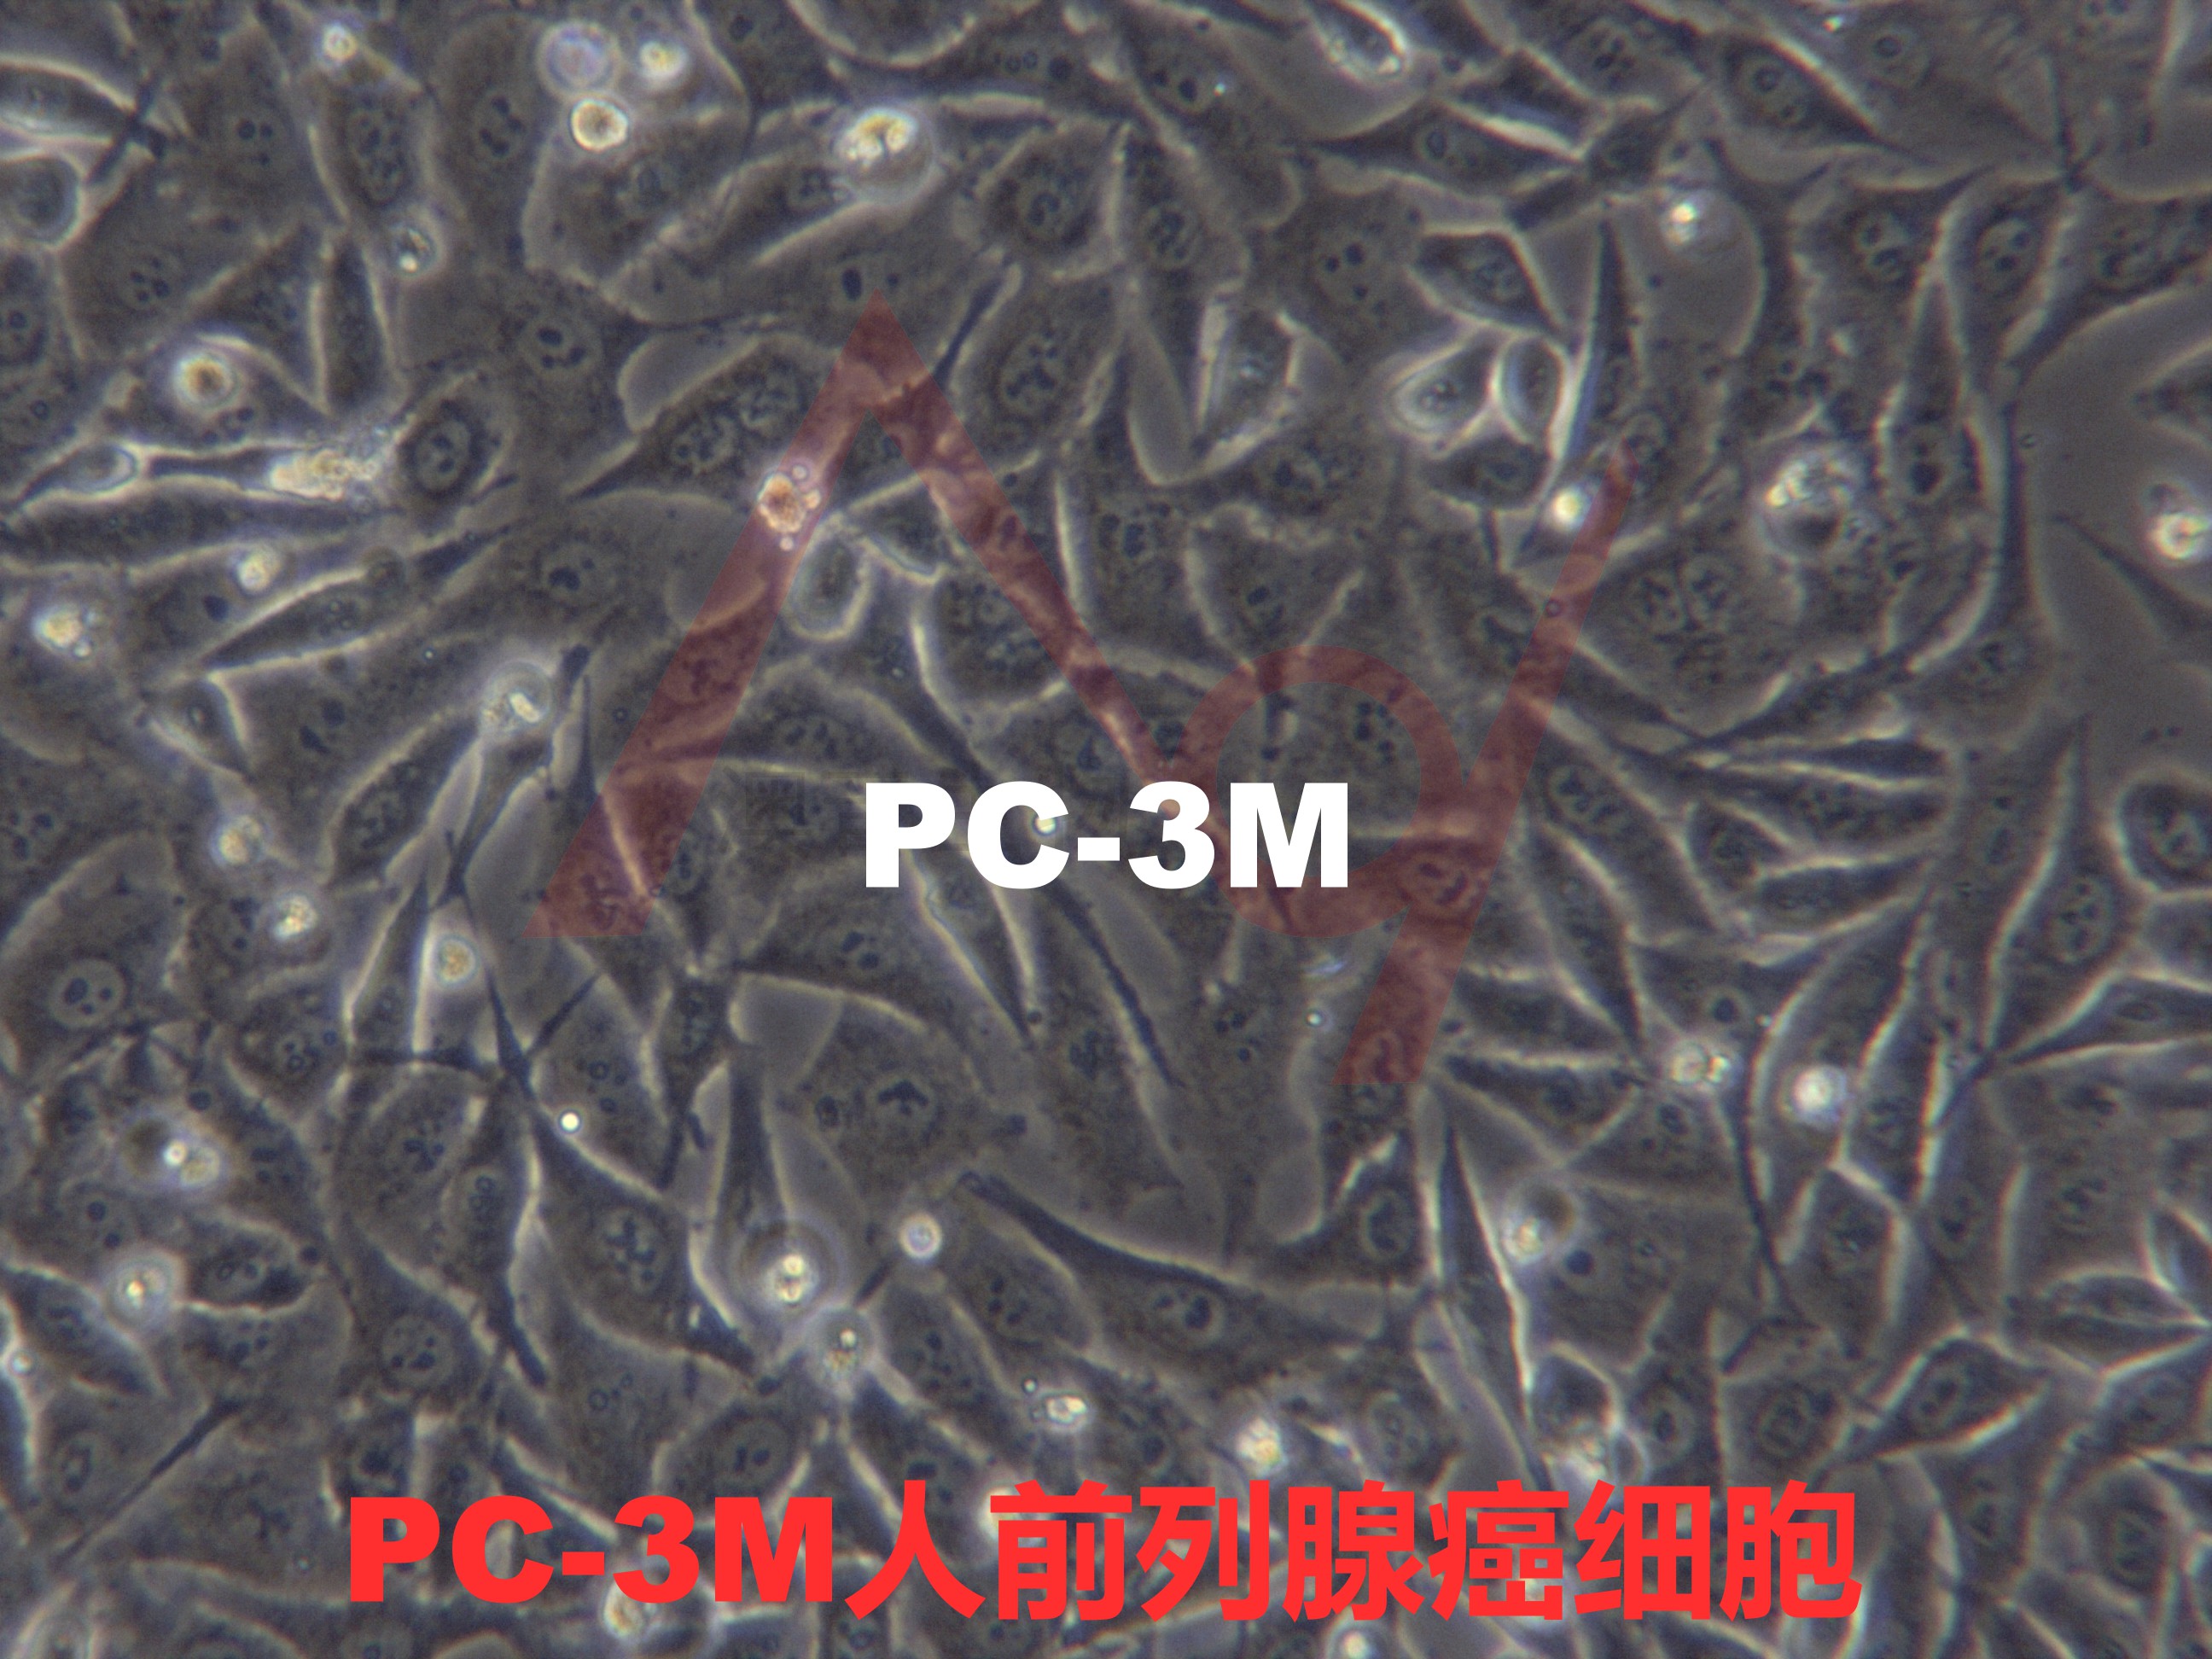 PC-3M[PC3-M; PC-3/M; PC3M; Pc3M]人前列腺癌细胞